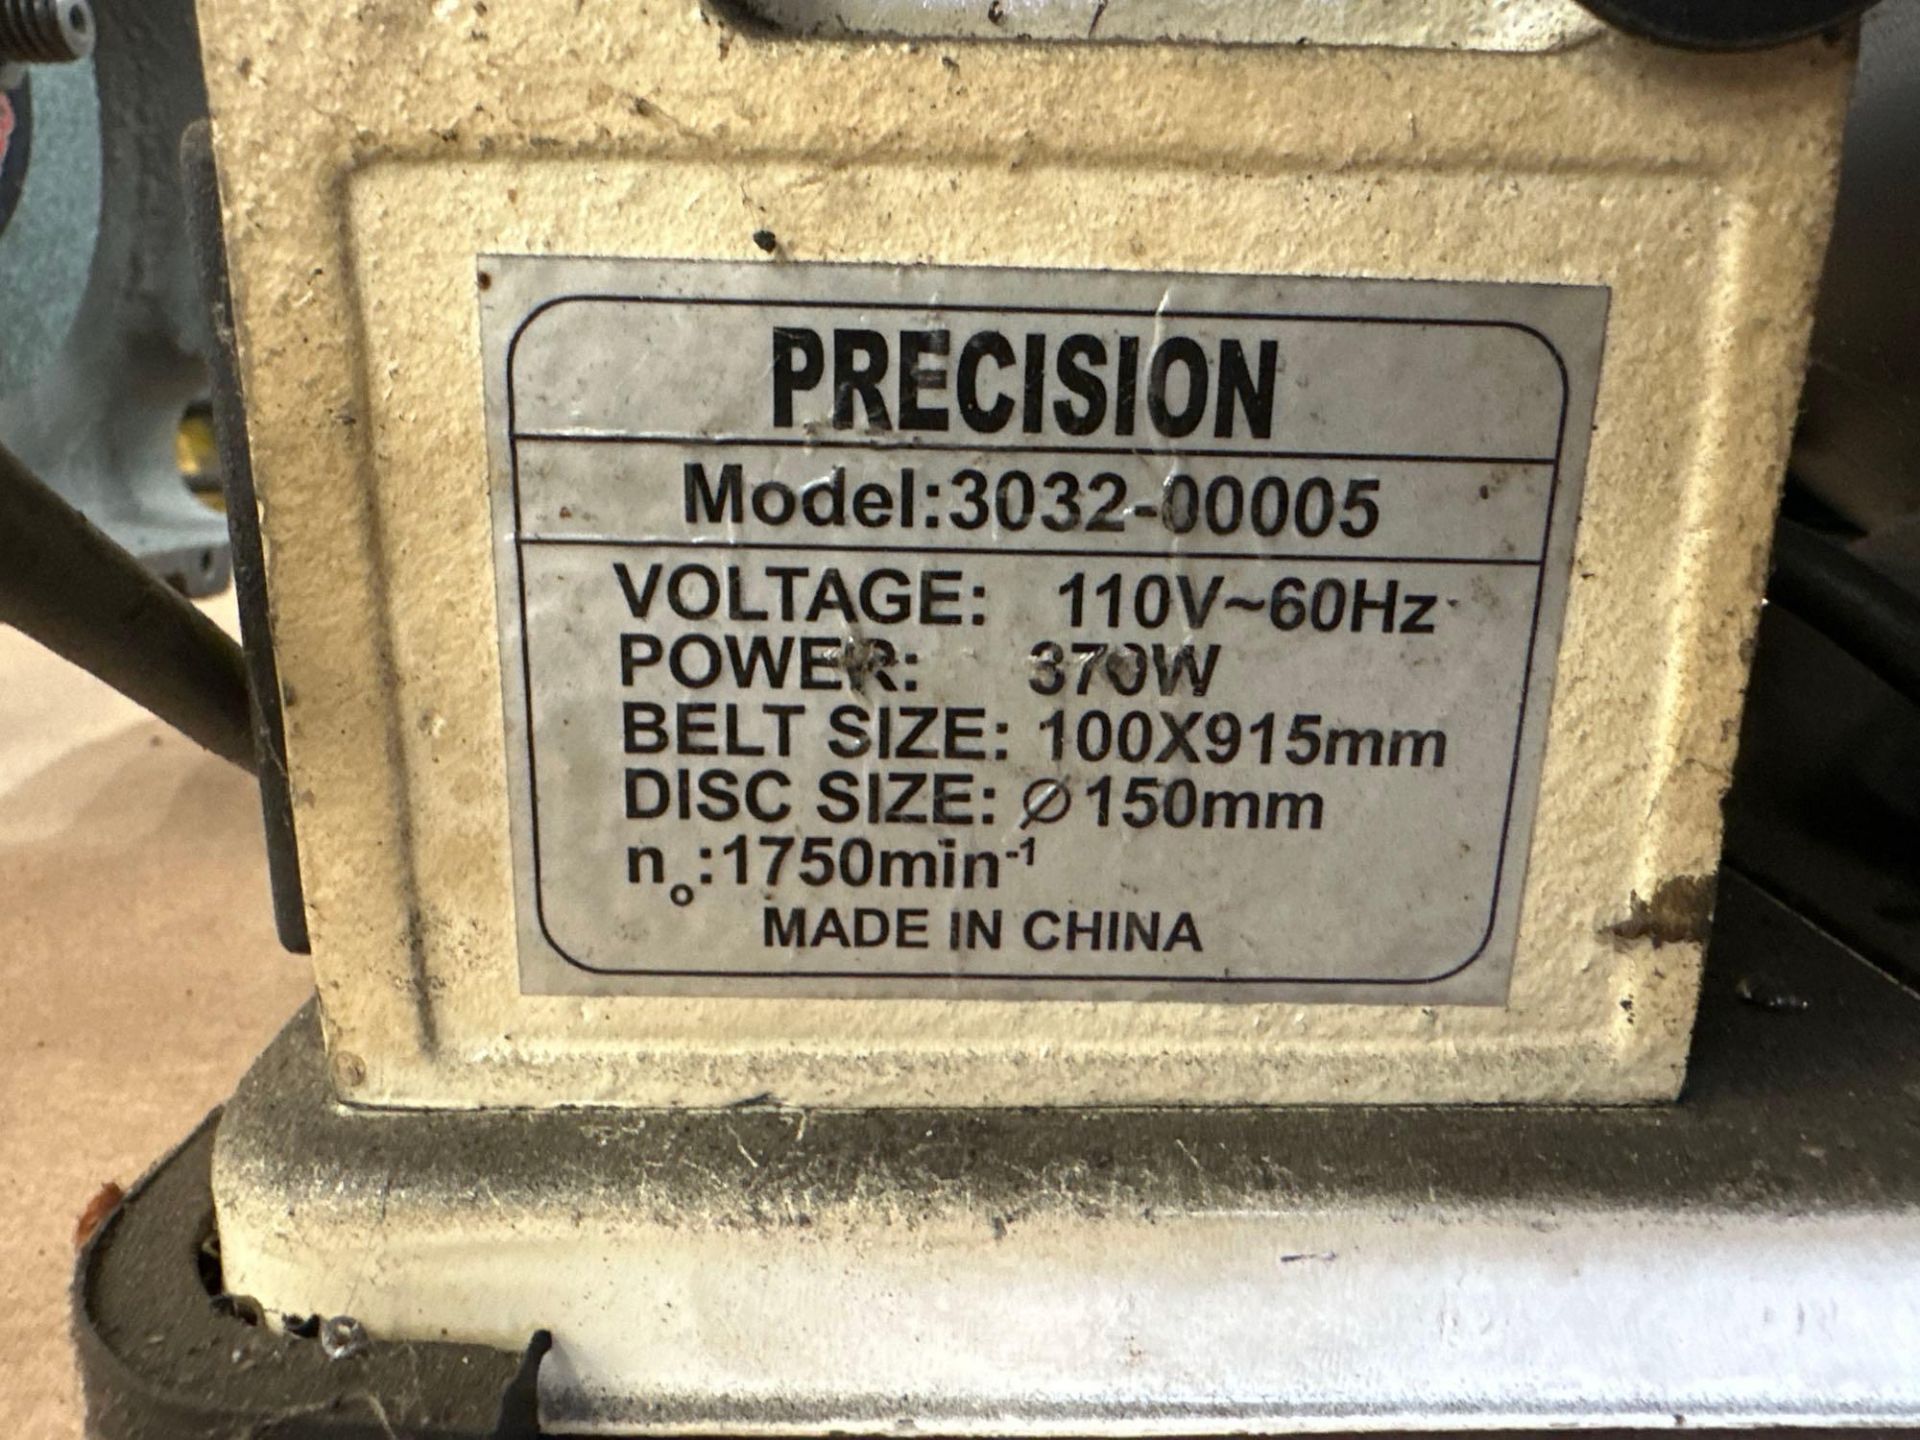 Precision Bench Table Belt/ Disc Sander Model 3032-00005 - Image 4 of 5